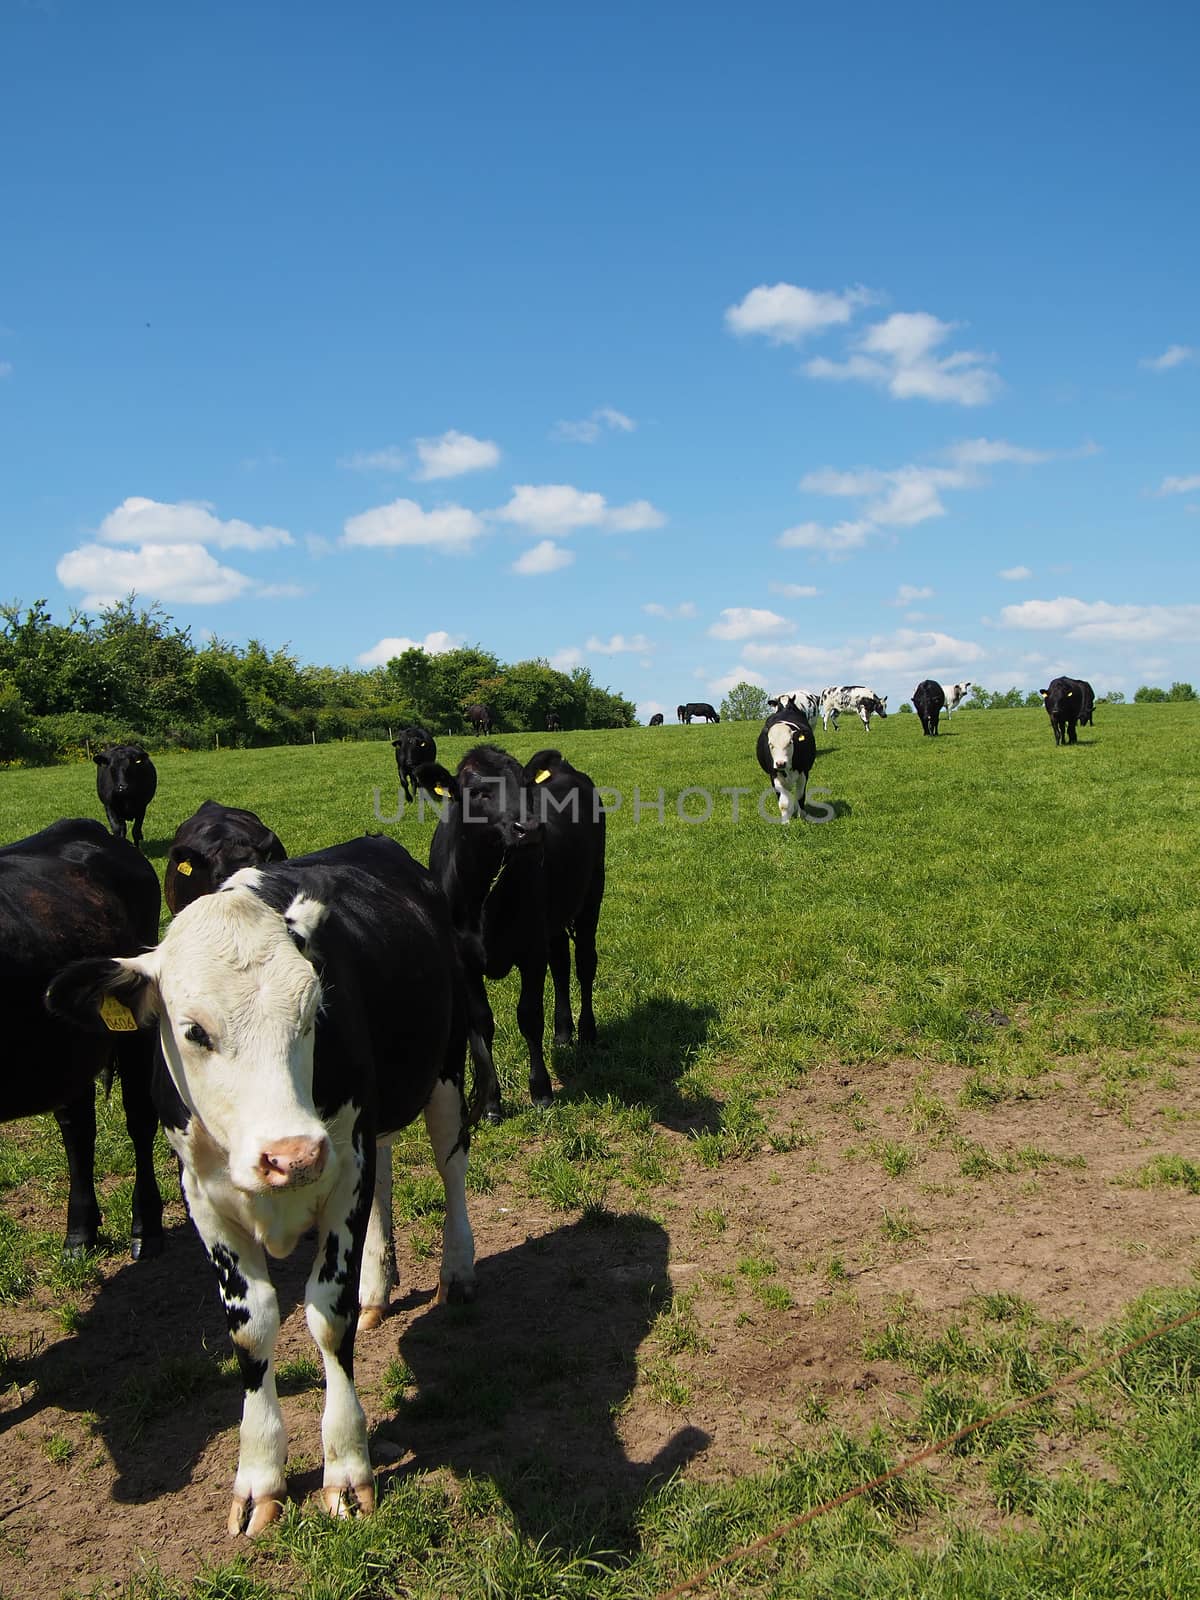 Cows Grazing in a Field by NikkiGensert